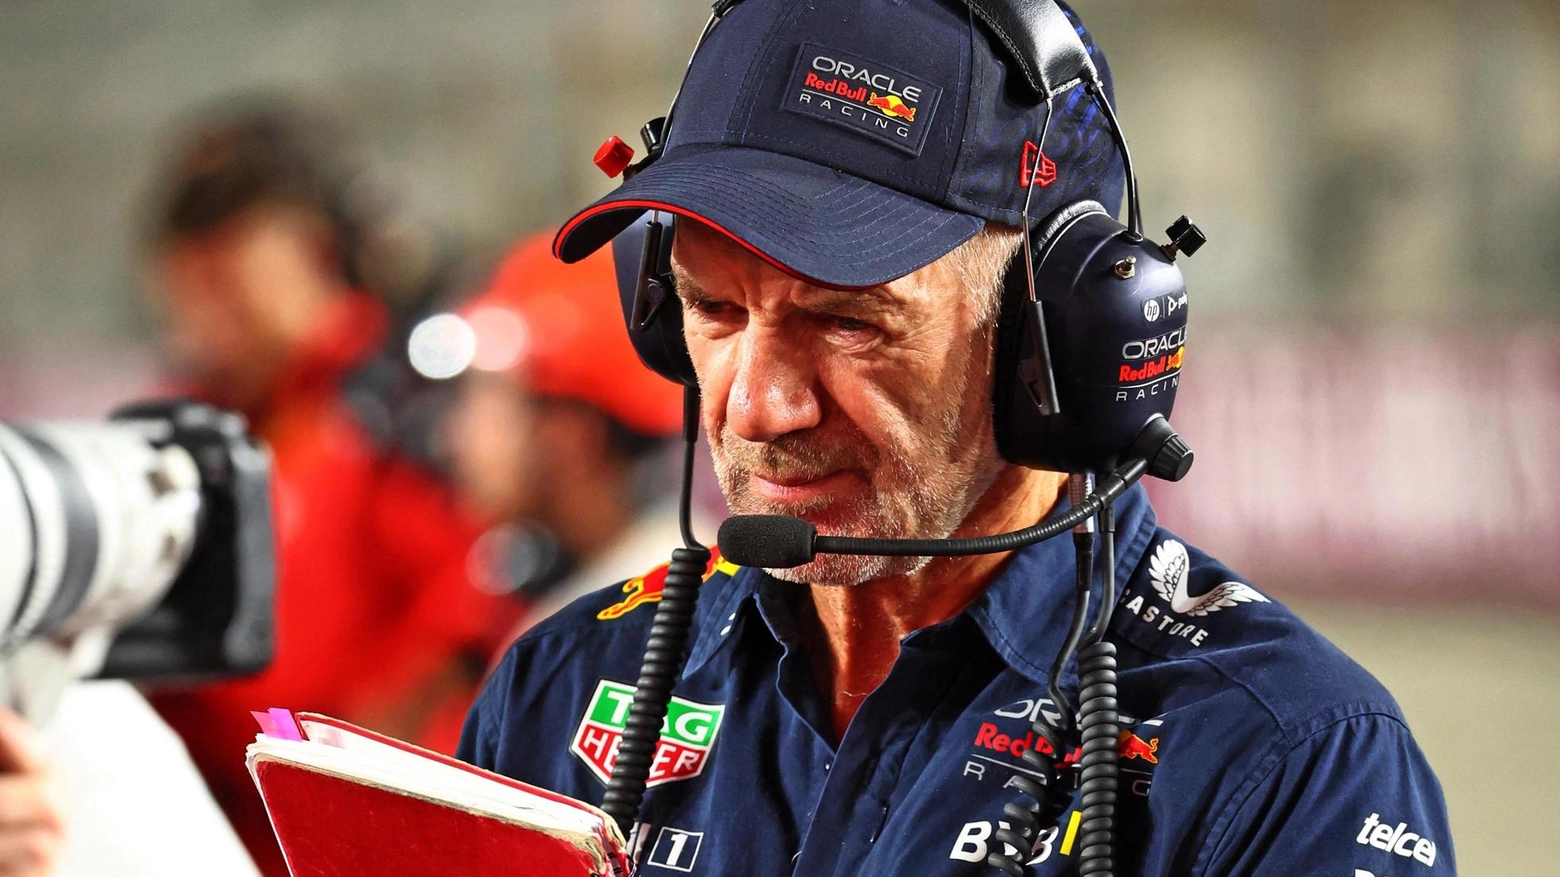 Adrian Newey lascia la Red Bull dopo vent'anni di successi. Possibile arrivo in Ferrari, ma anche Aston Martin e Mercedes interessate. Futuro incerto in F1.